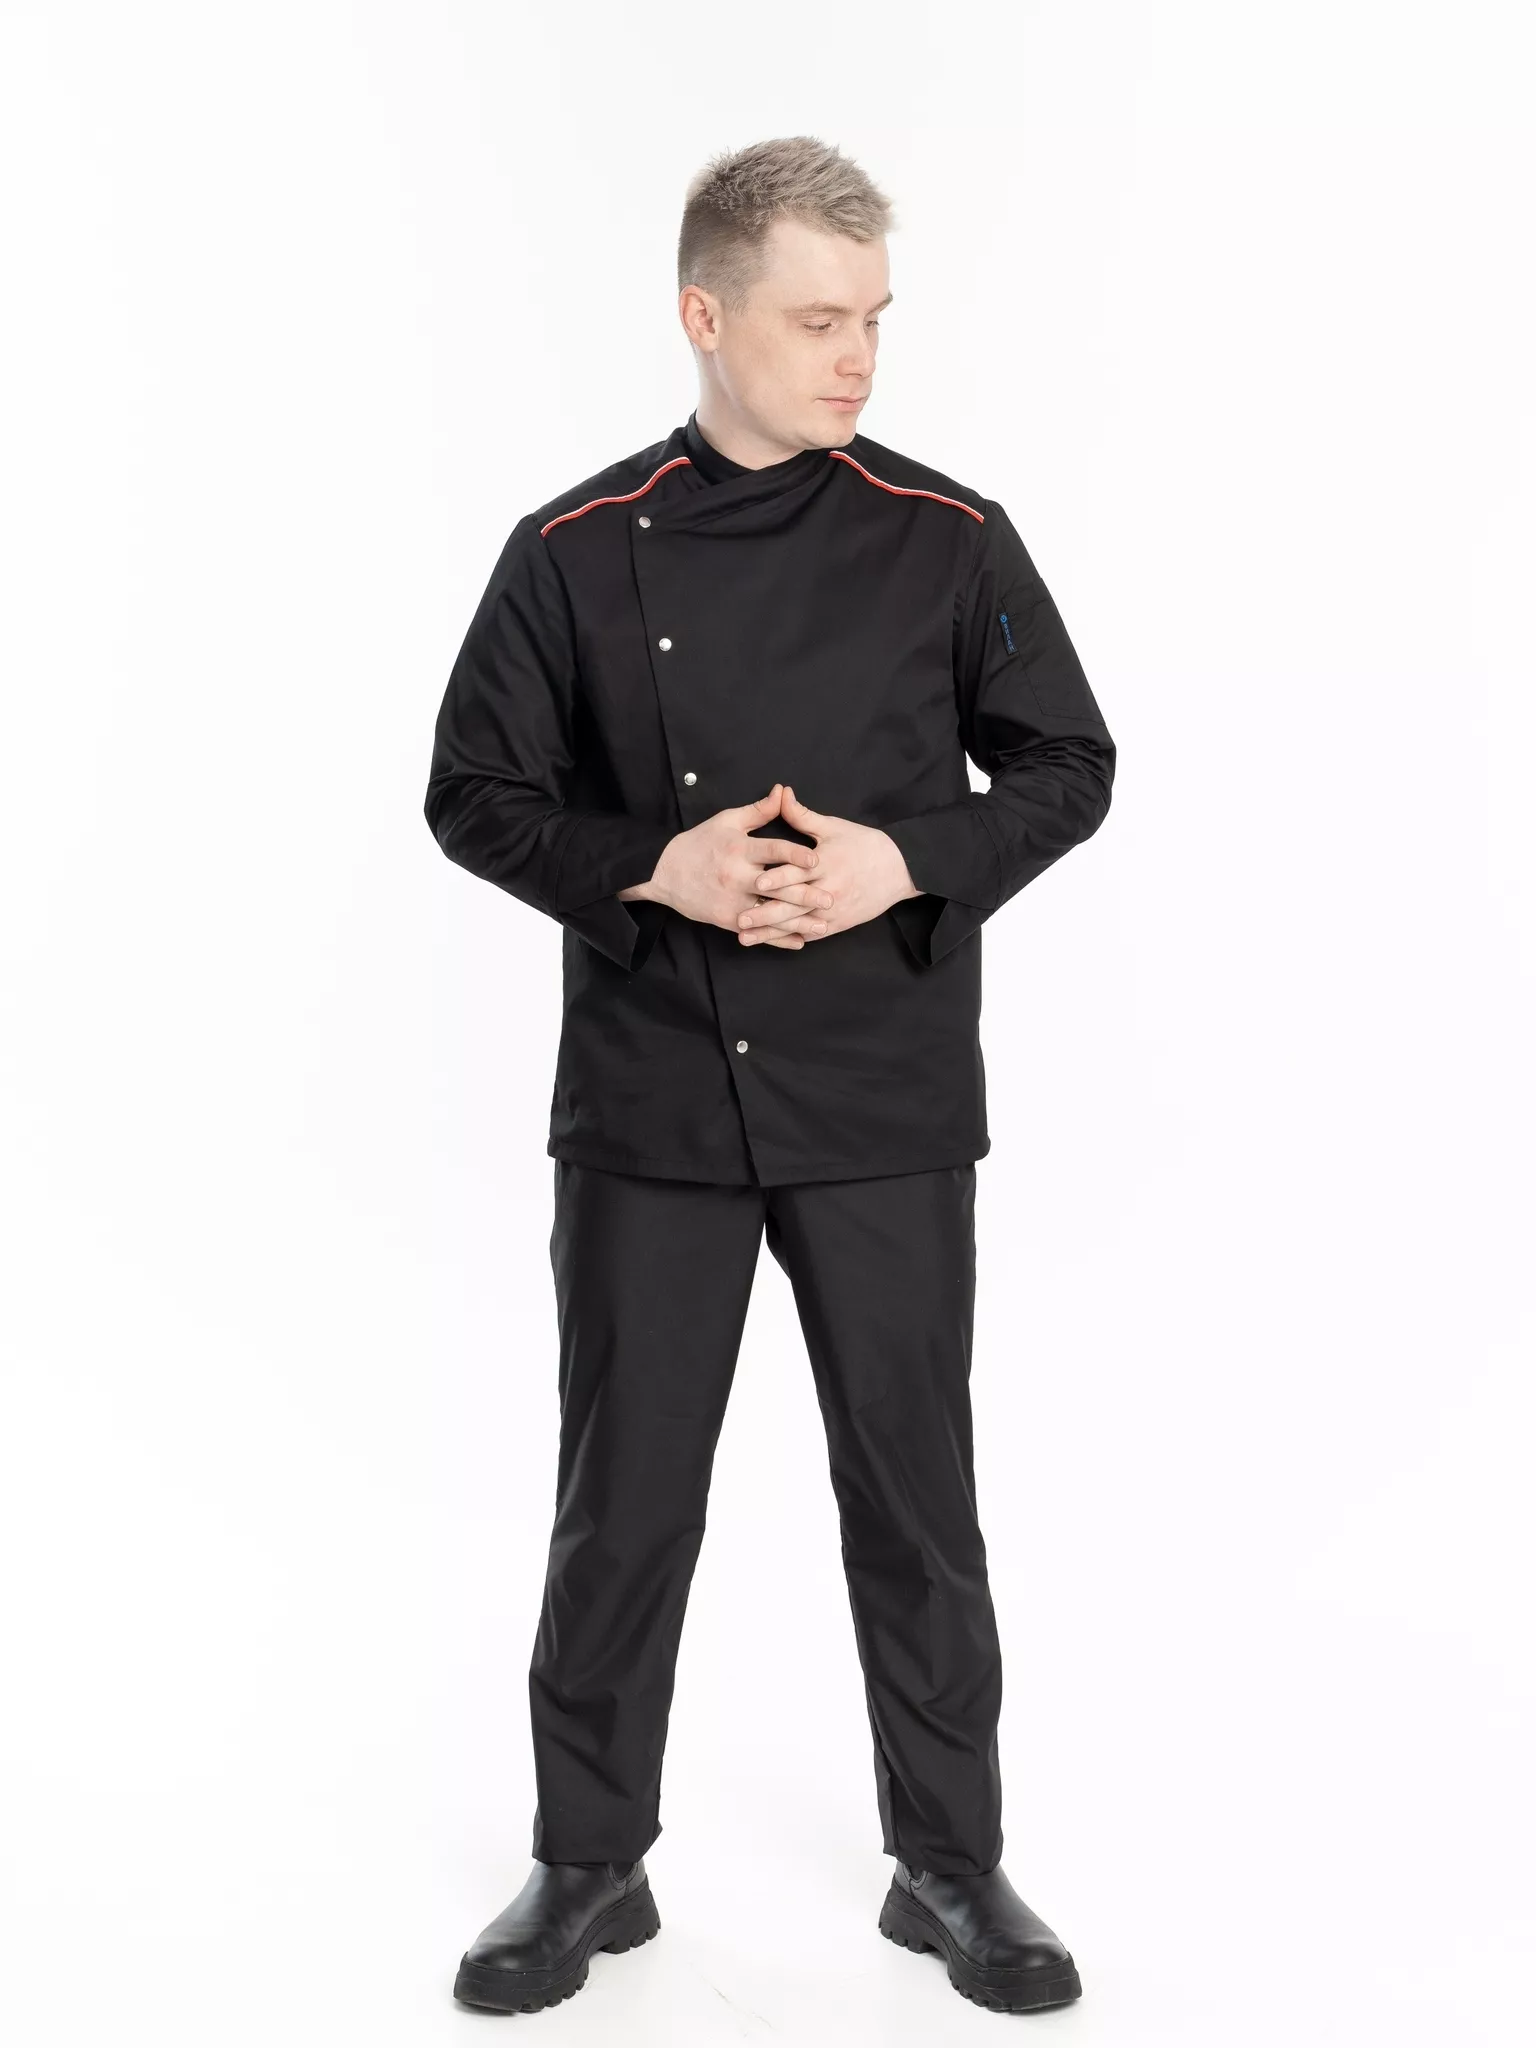 Куртка мужская КМ.590 р.60-62, рост 182-188 (цвет черный, кант красный, белый)